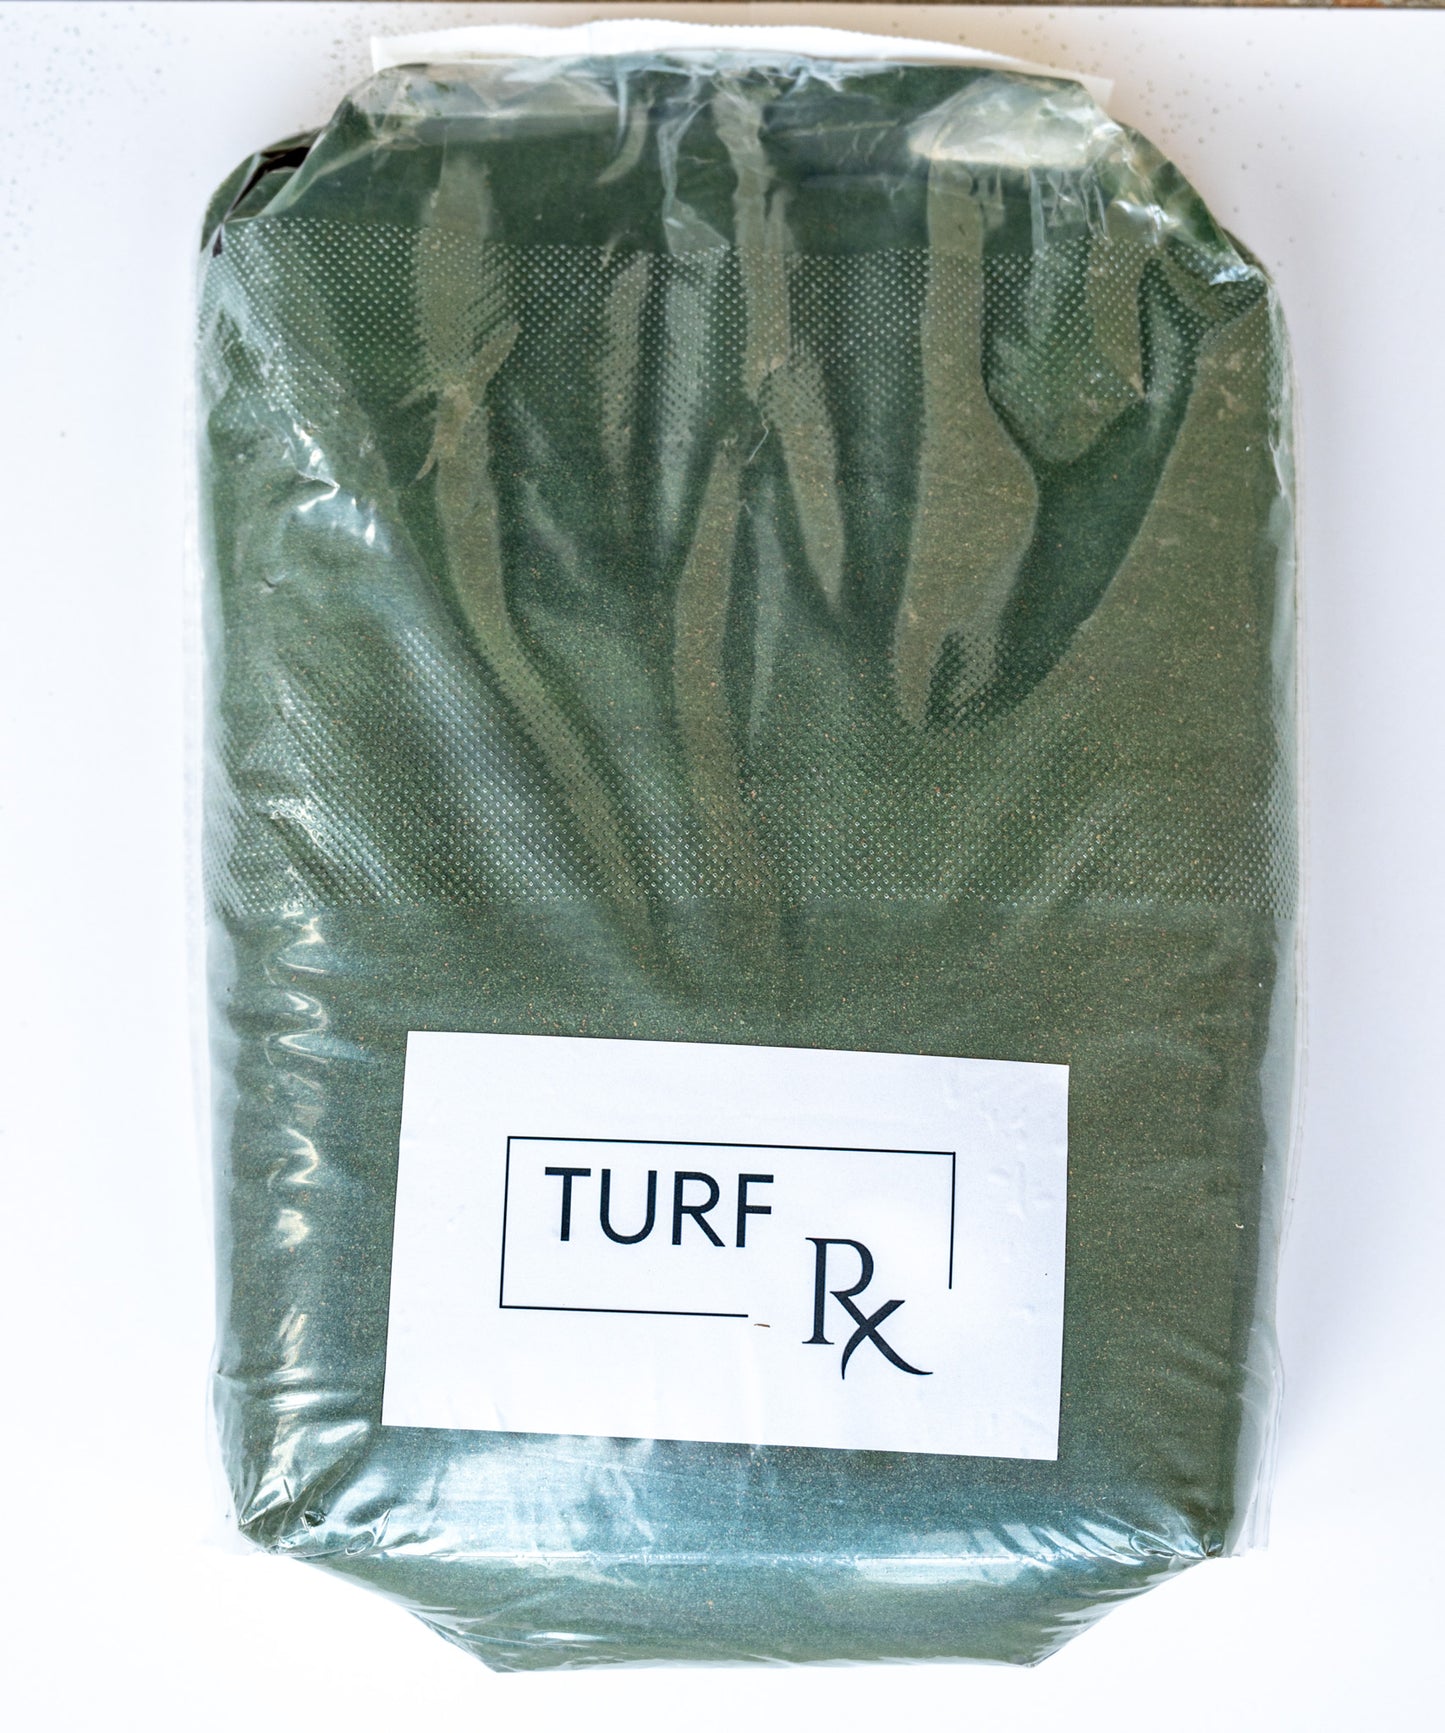 Turf RX - Green